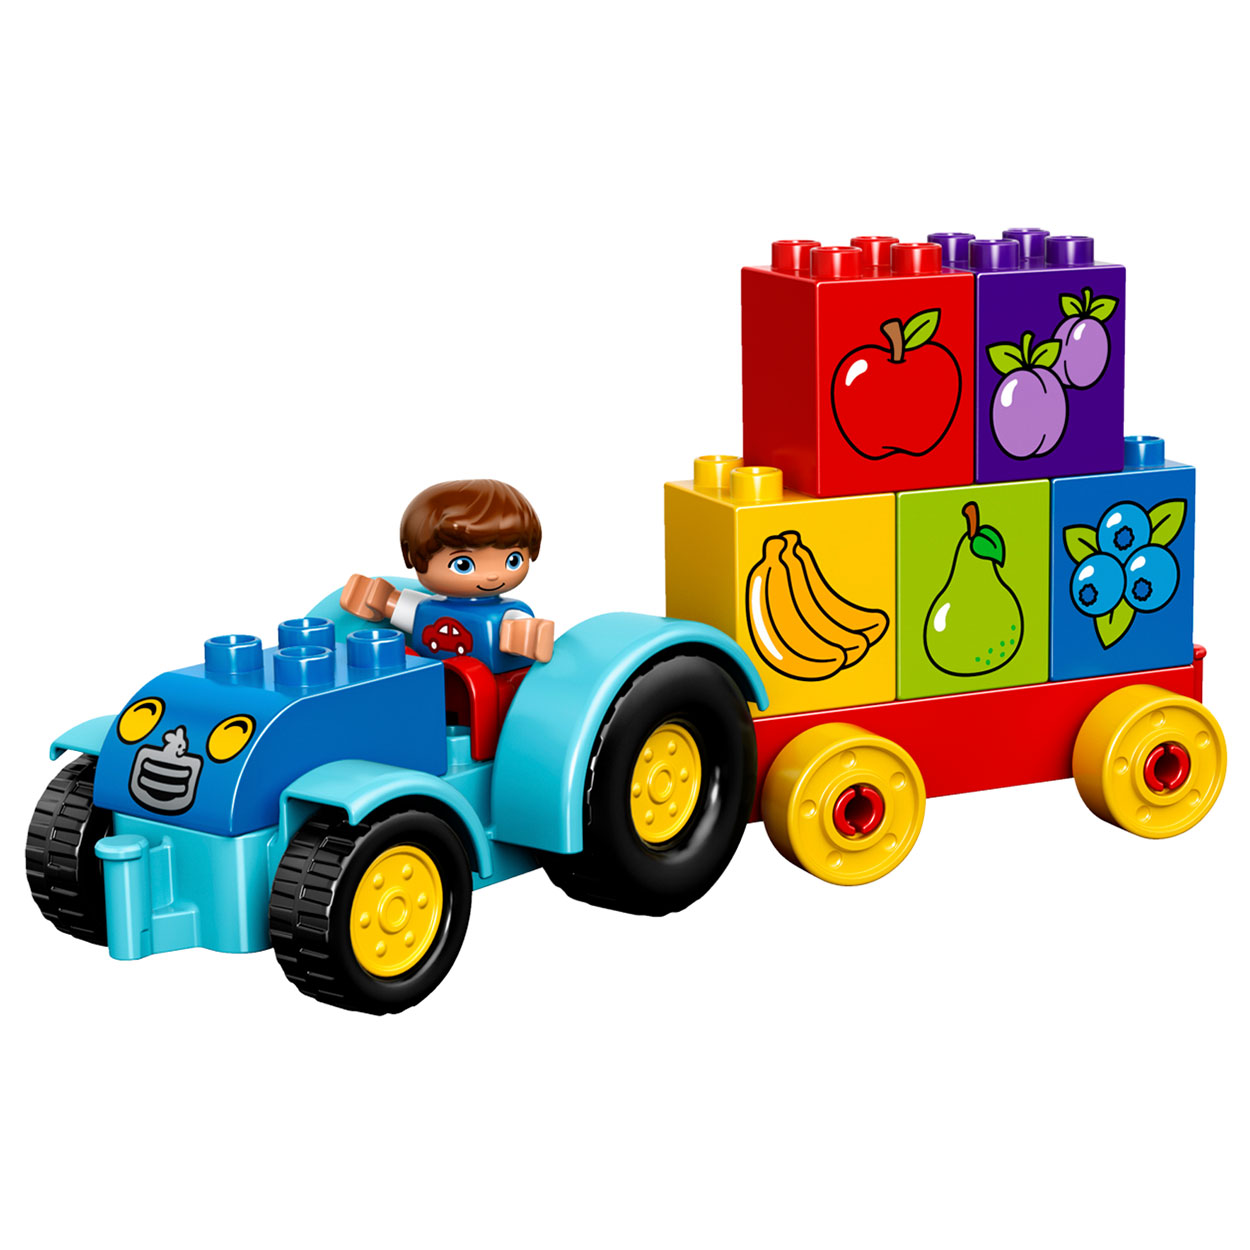 LEGO DUPLO 10615 Mijn Eerste Tractor